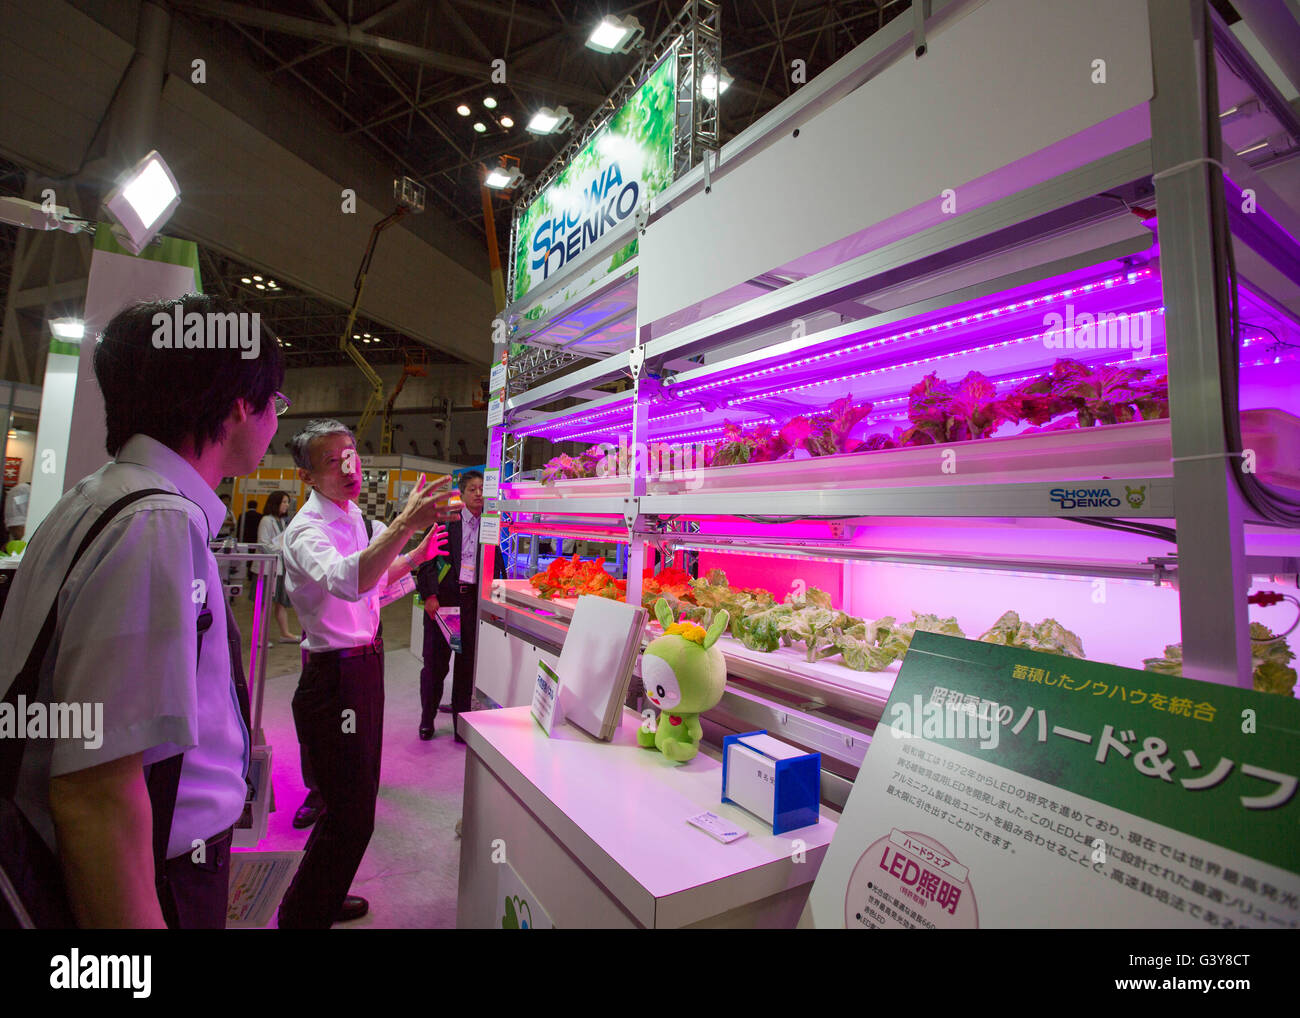 Tokyo, Giappone. 17 Giugno, 2016. Il mercato dell'energia, la biomassa, impianti di fabbrica e Smart Agricoltura e fonti di energia rinnovabili. 17 Giugno, 2016. Tokyo, Giappone, 17 Giugno 2016 - Un espositore parla con un visitatore circa la loro illuminazione a LED prodotti utilizzati per scopi di agricoltura durante la Smart Community Giappone 2016 a Tokyo il Venerdì, 17 giugno 2016. La Smart Community Japan Expo mette in mostra le più recenti tecnologie relative alla nuova generazione di energia, riforme nel mercato dell'energia, la biomassa, impianti di fabbrica e smart agricoltura e fonti di energia rinnovabili. Credito: AFLO/Alamy Live News Foto Stock